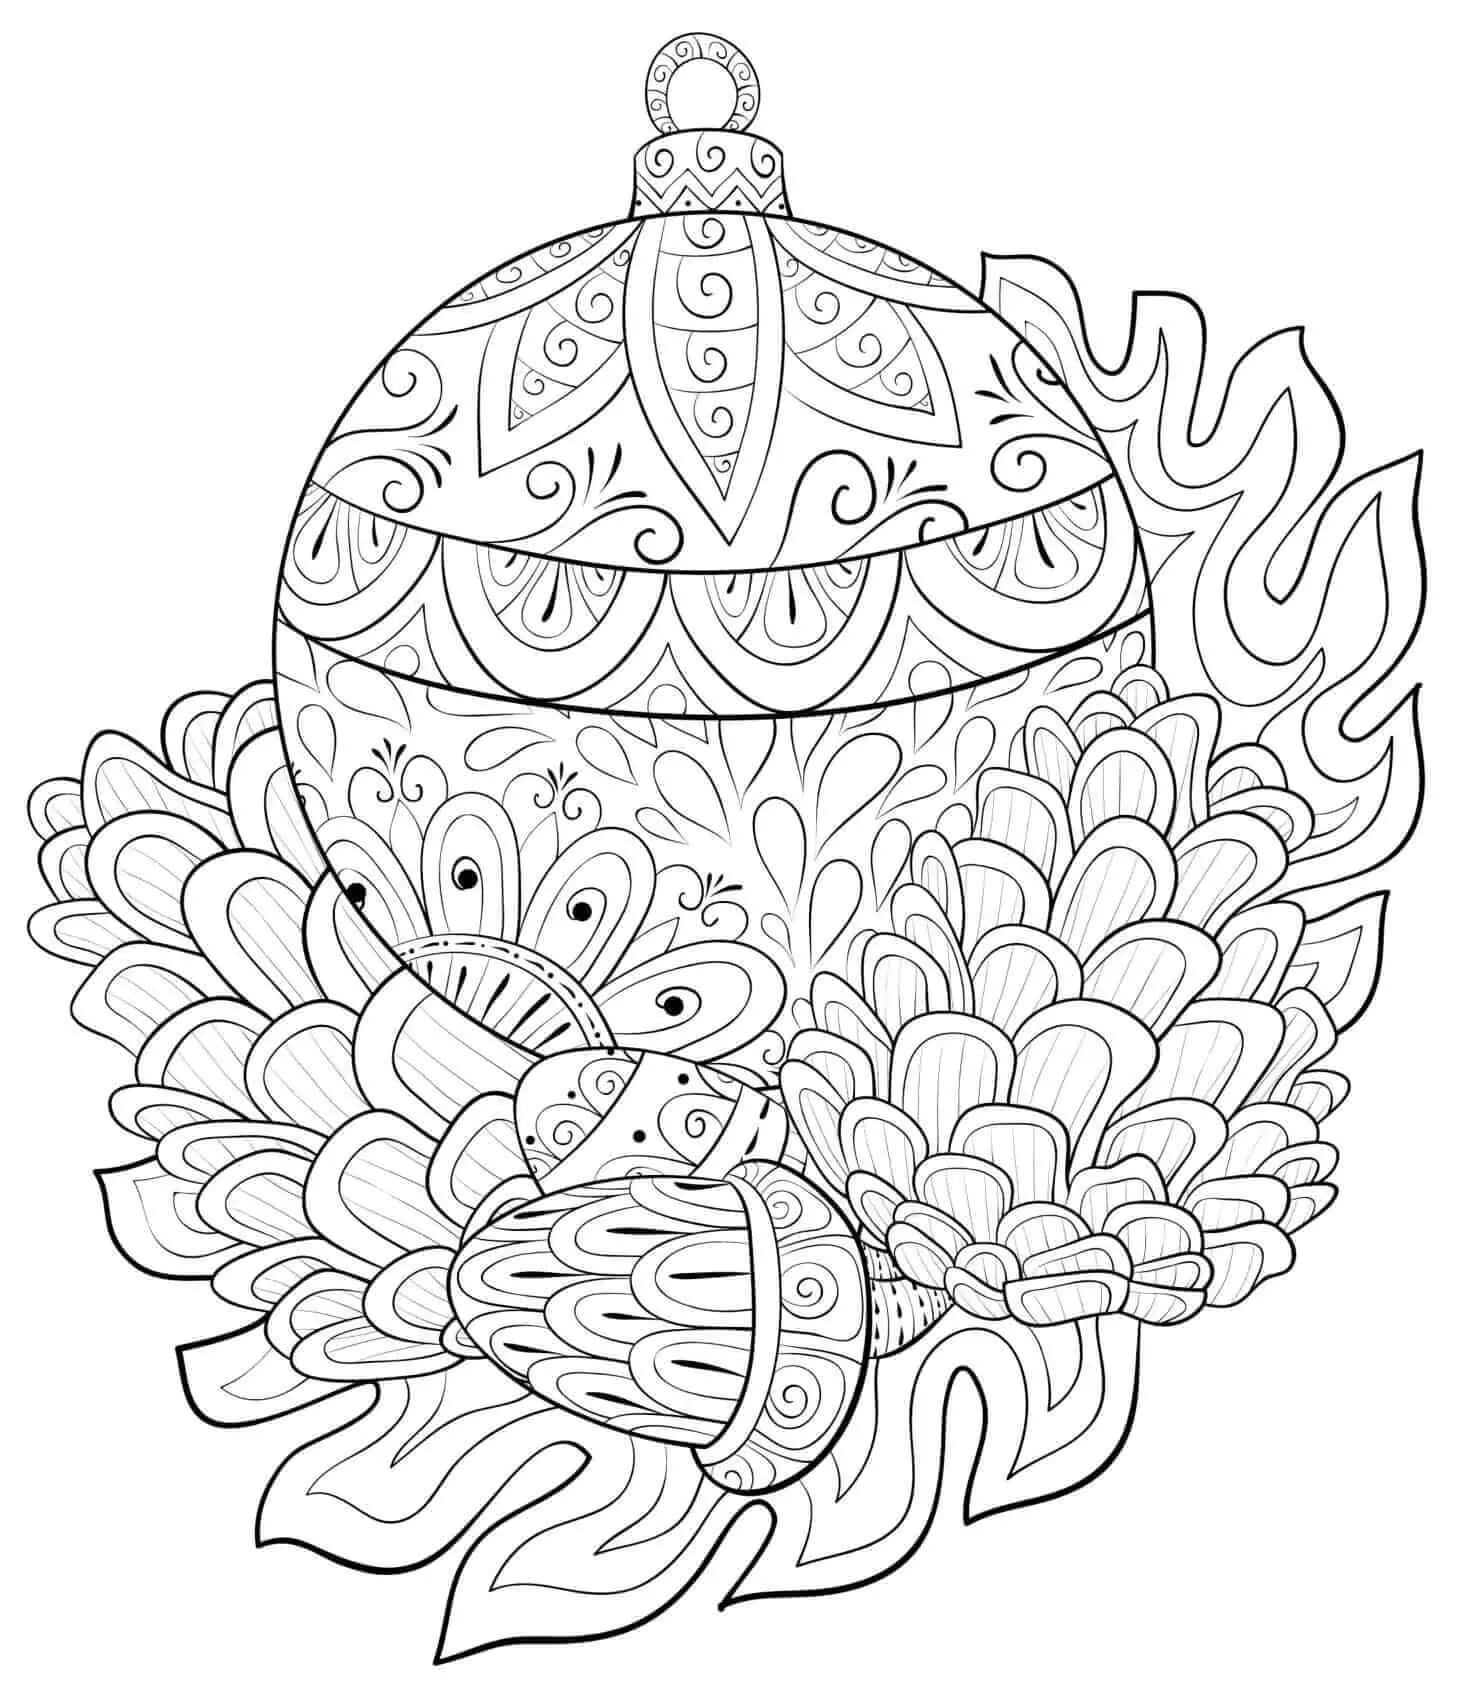 Mandala Christmas Coloring Page - Sheet 7 Mandalas